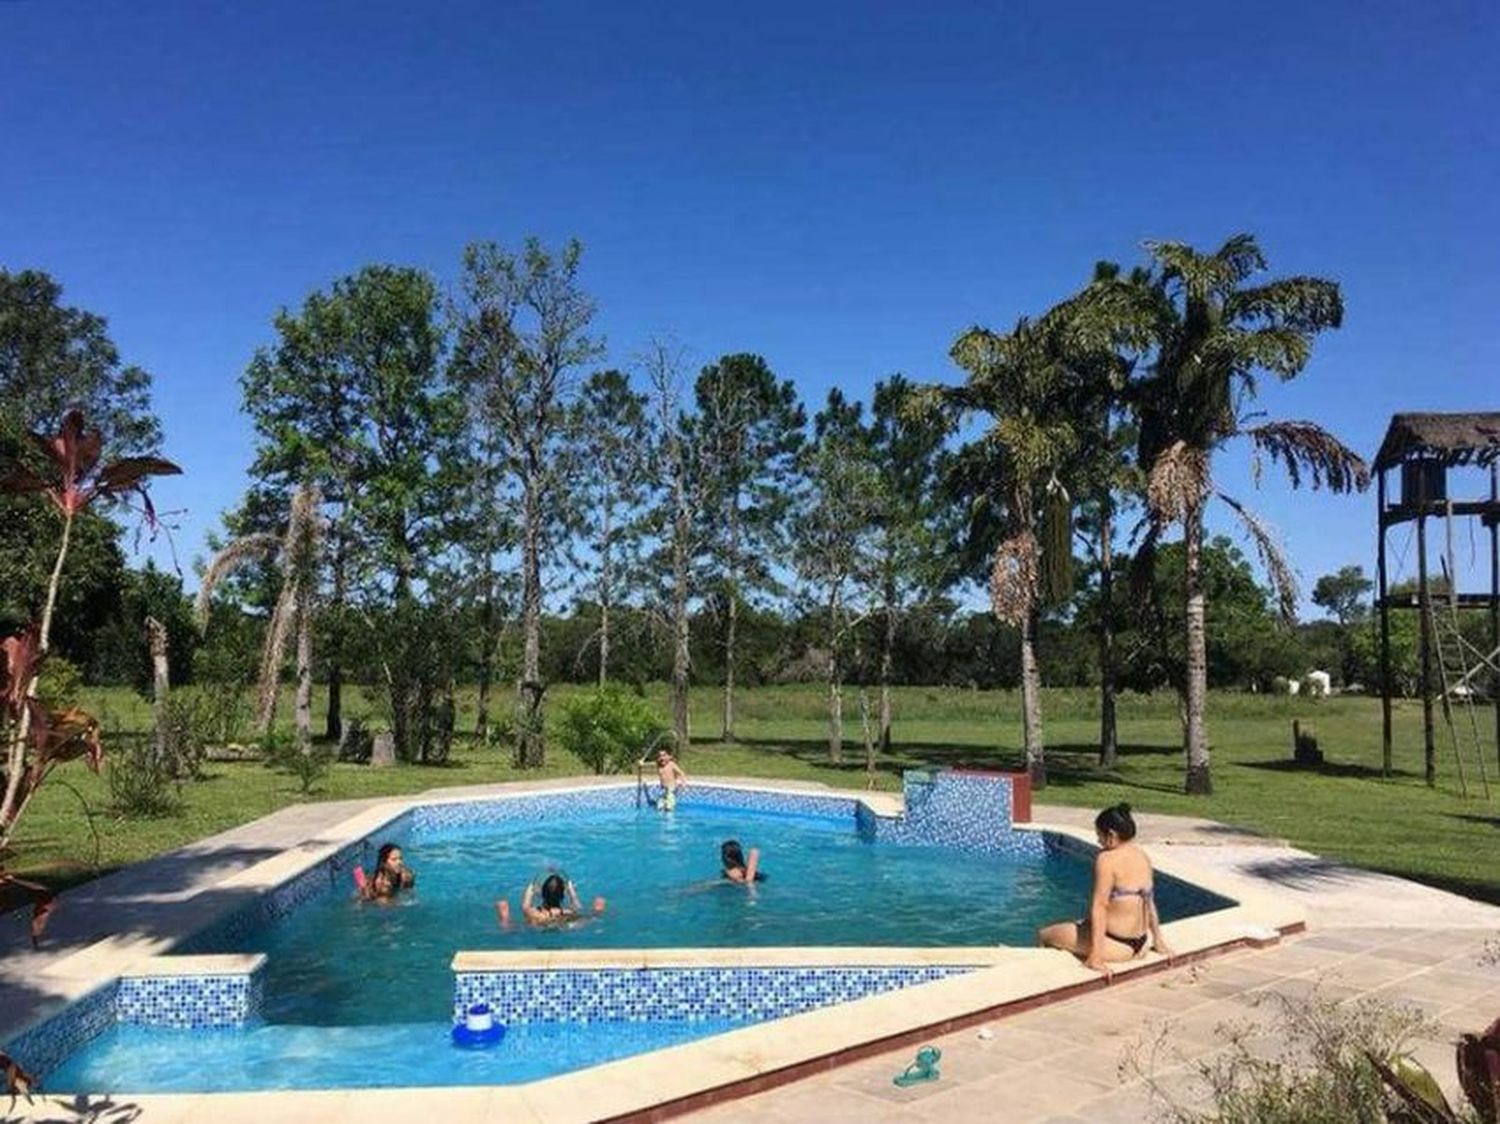 La villa turística de Herradura está con reservas completas hasta febrero